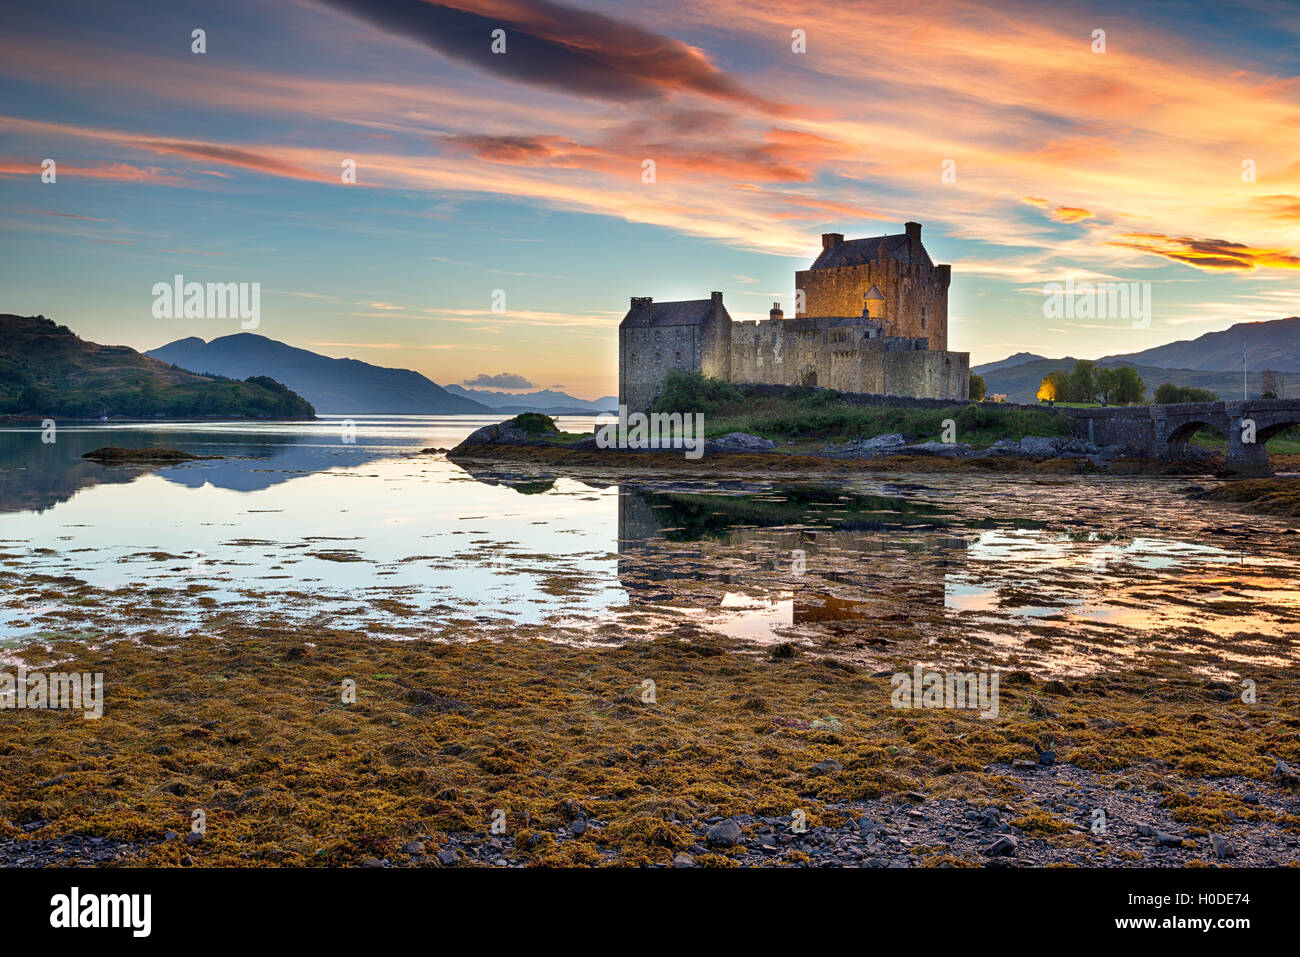 Magnifique coucher de soleil sur le château d'Eilean Donan, dans les Highlands écossais Banque D'Images